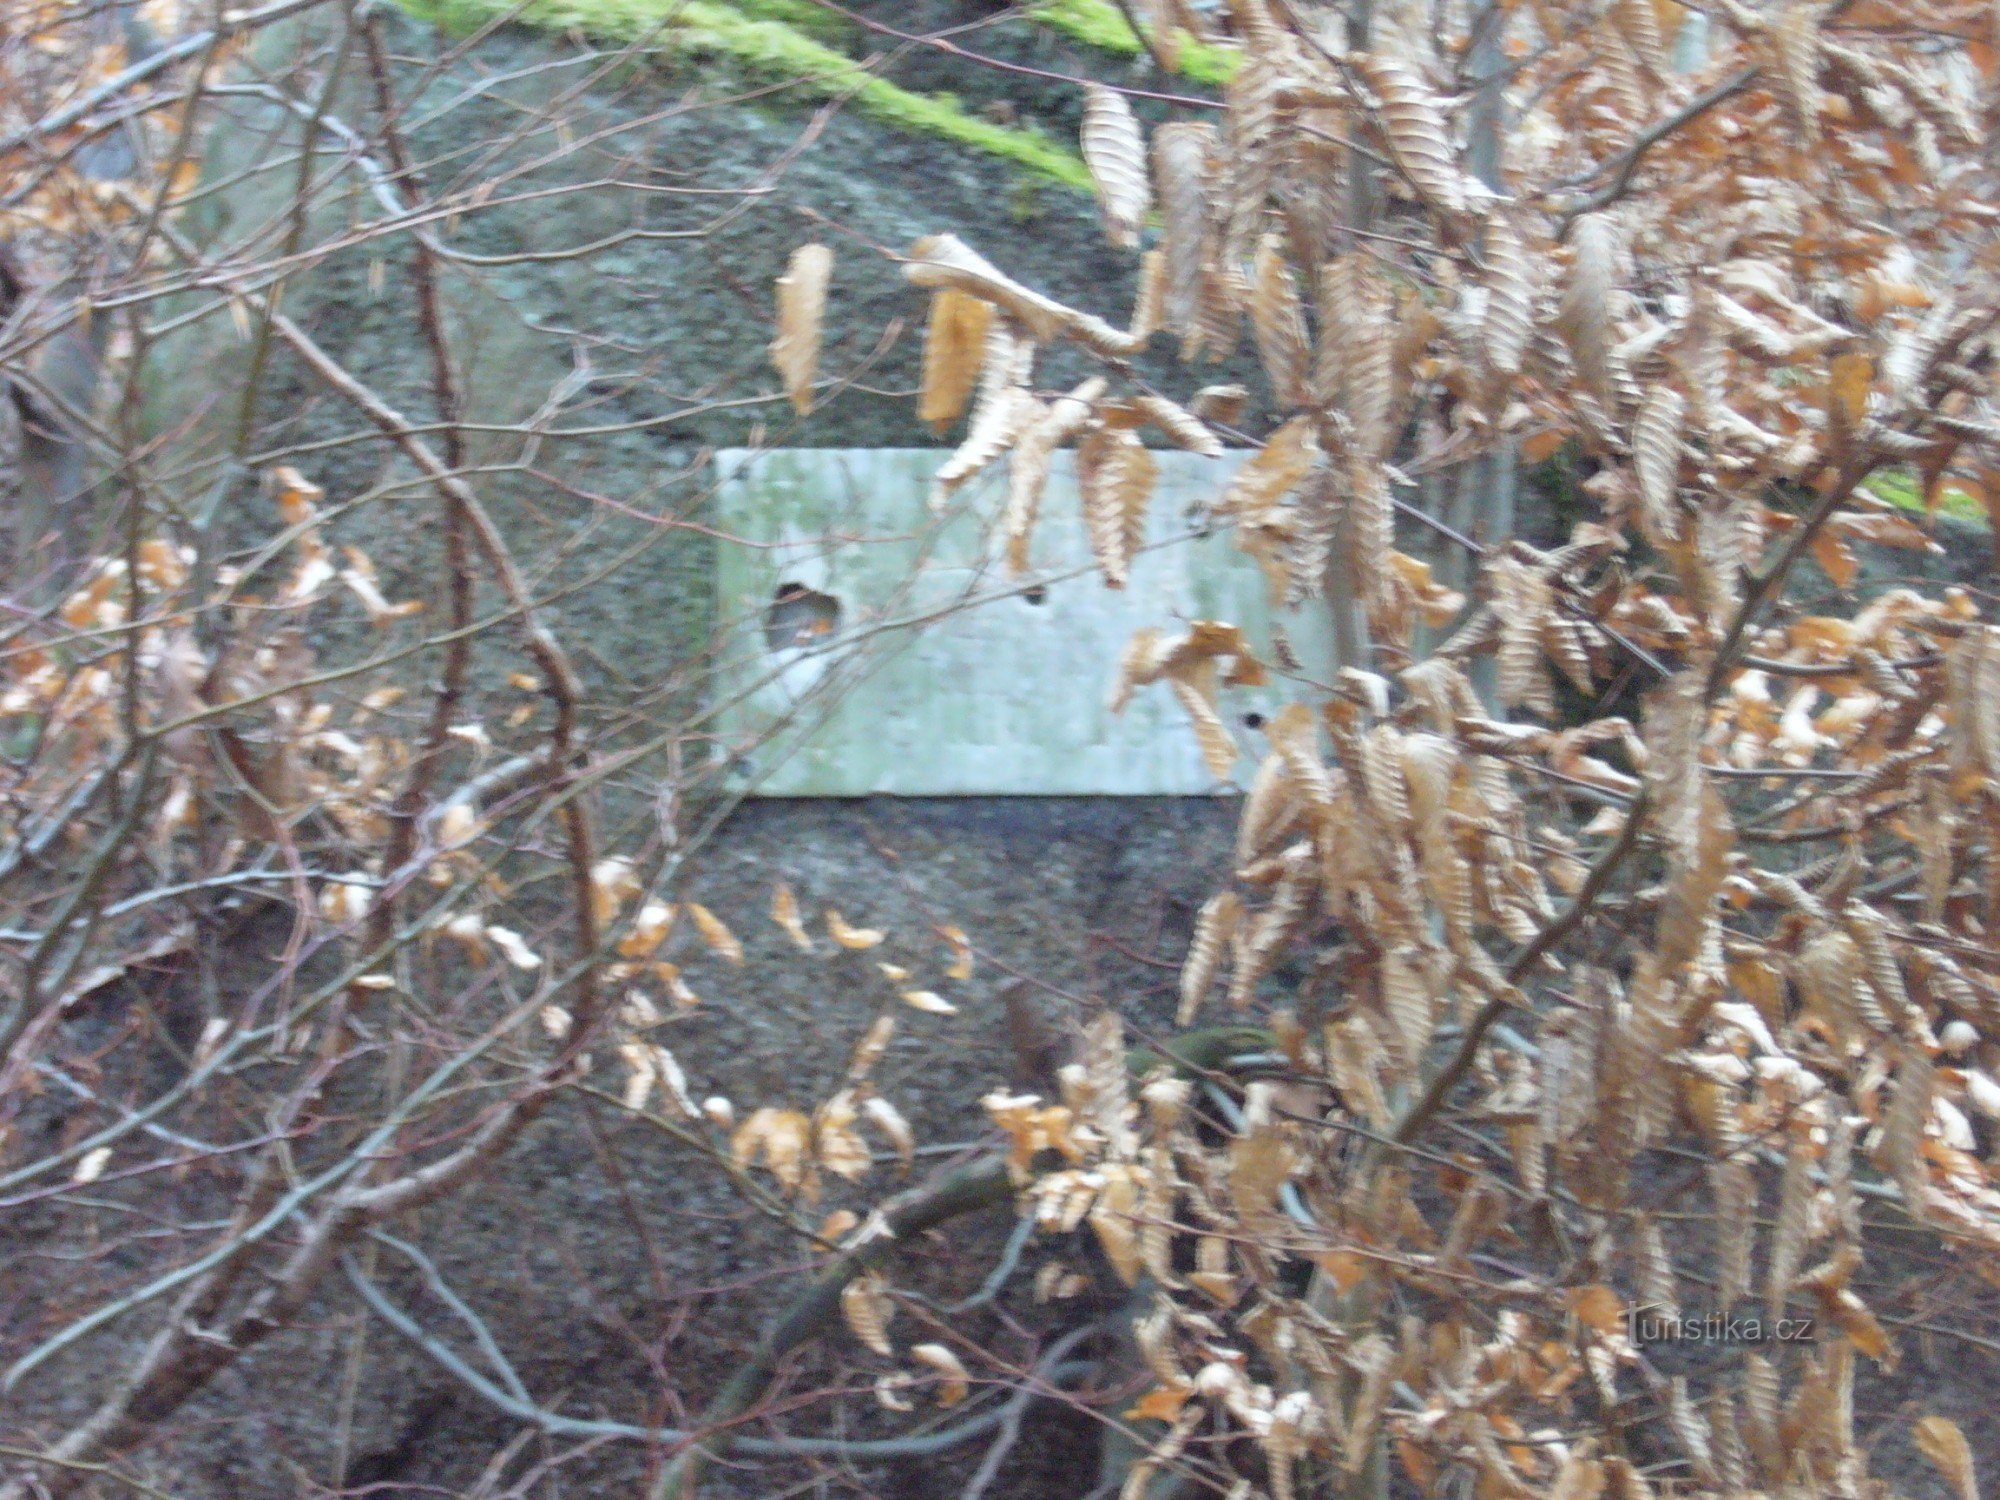 A boulder with a memorial inscription